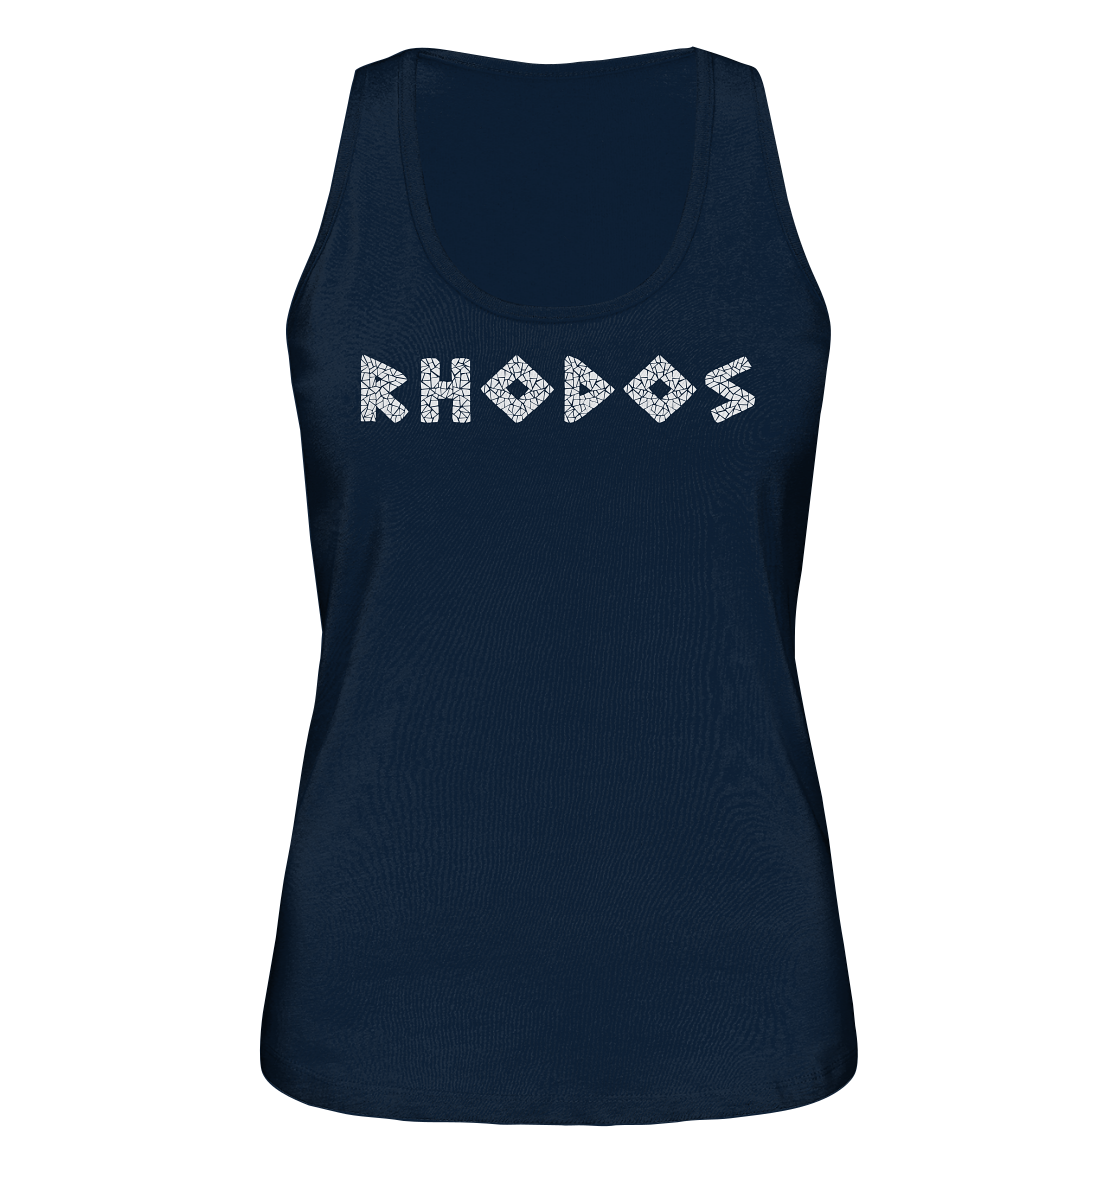 Rhodos Mosaik - Ladies Organic Tank-Top